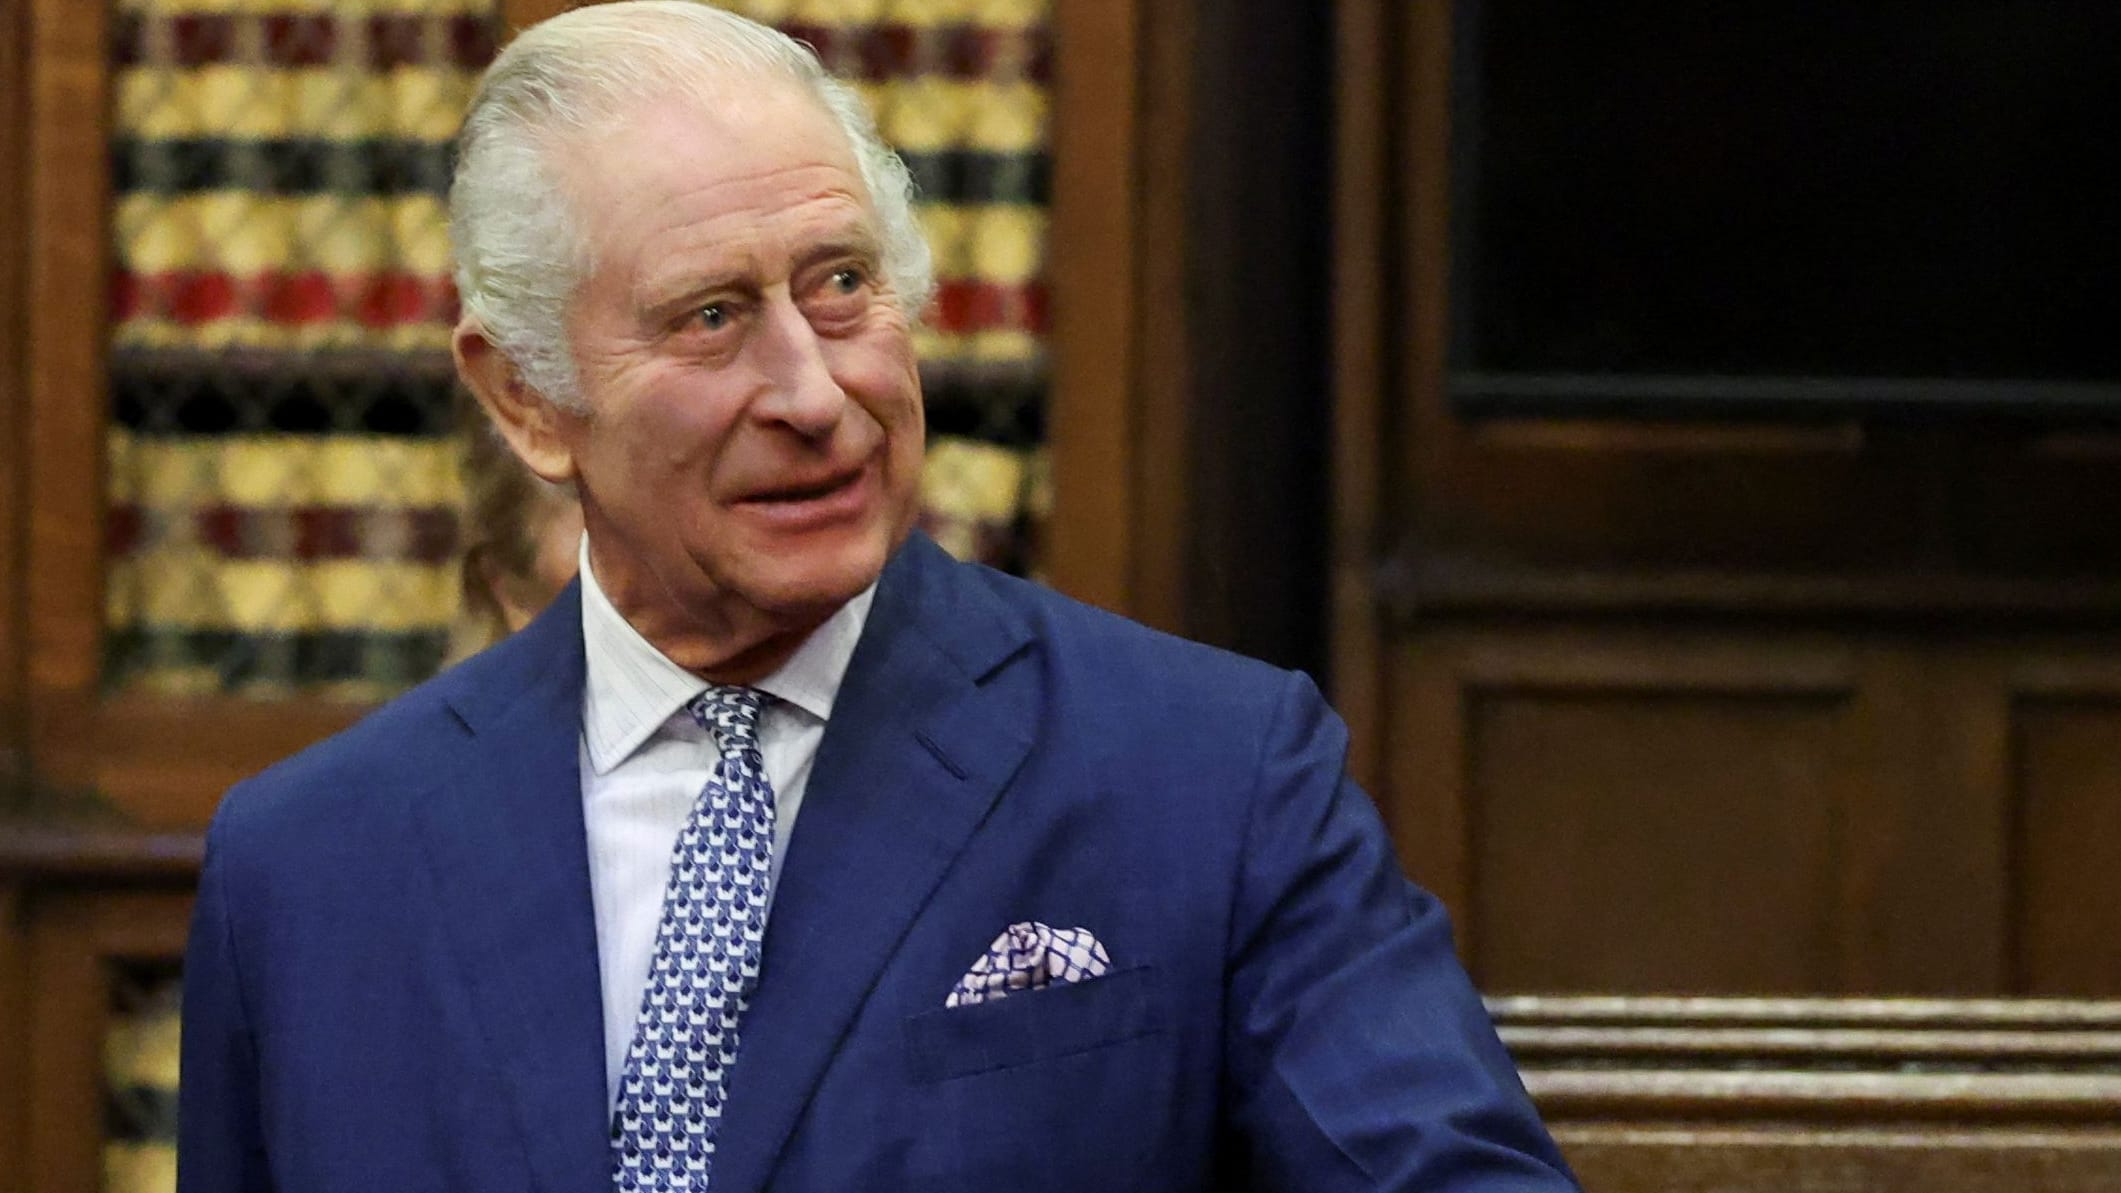 König Charles III.: Nach Krebsdiagnose 